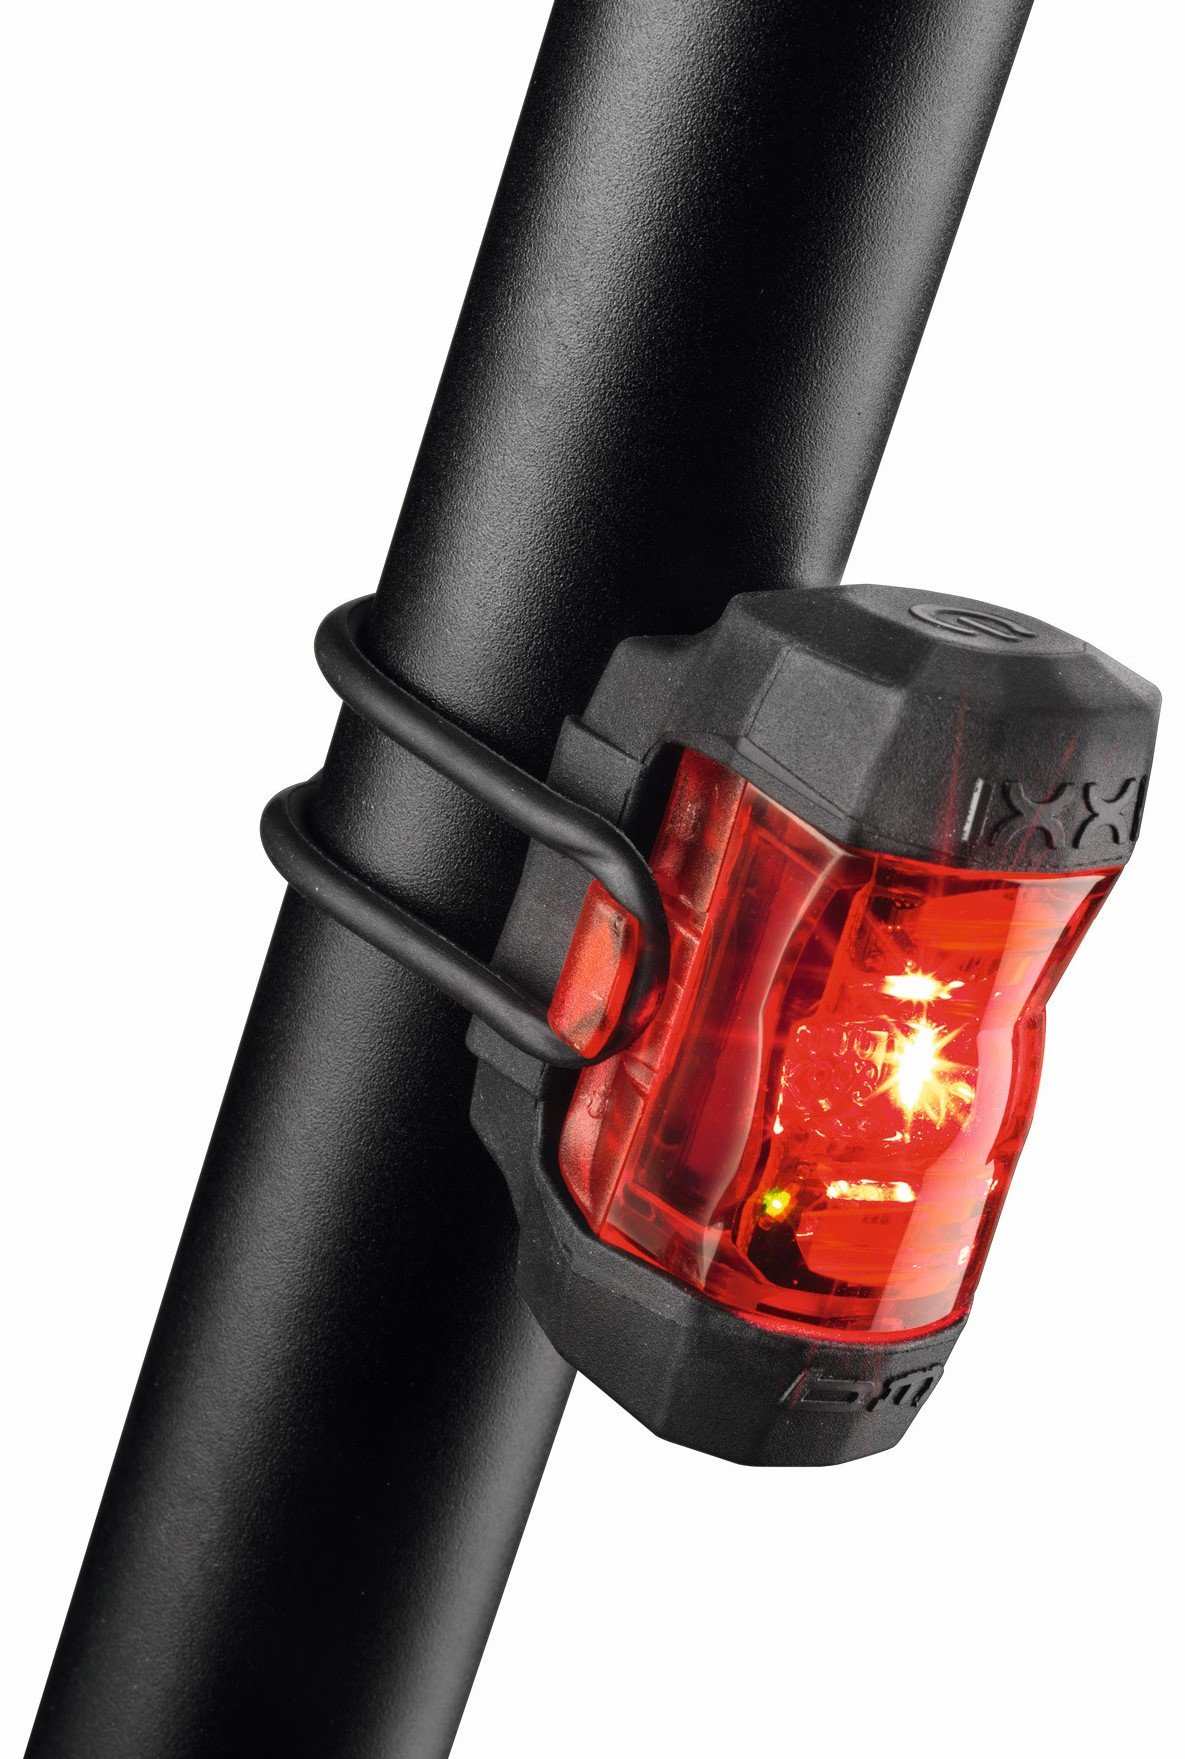 Bumm IXXI achterlicht LED usb oplaadbaar met bevestiging